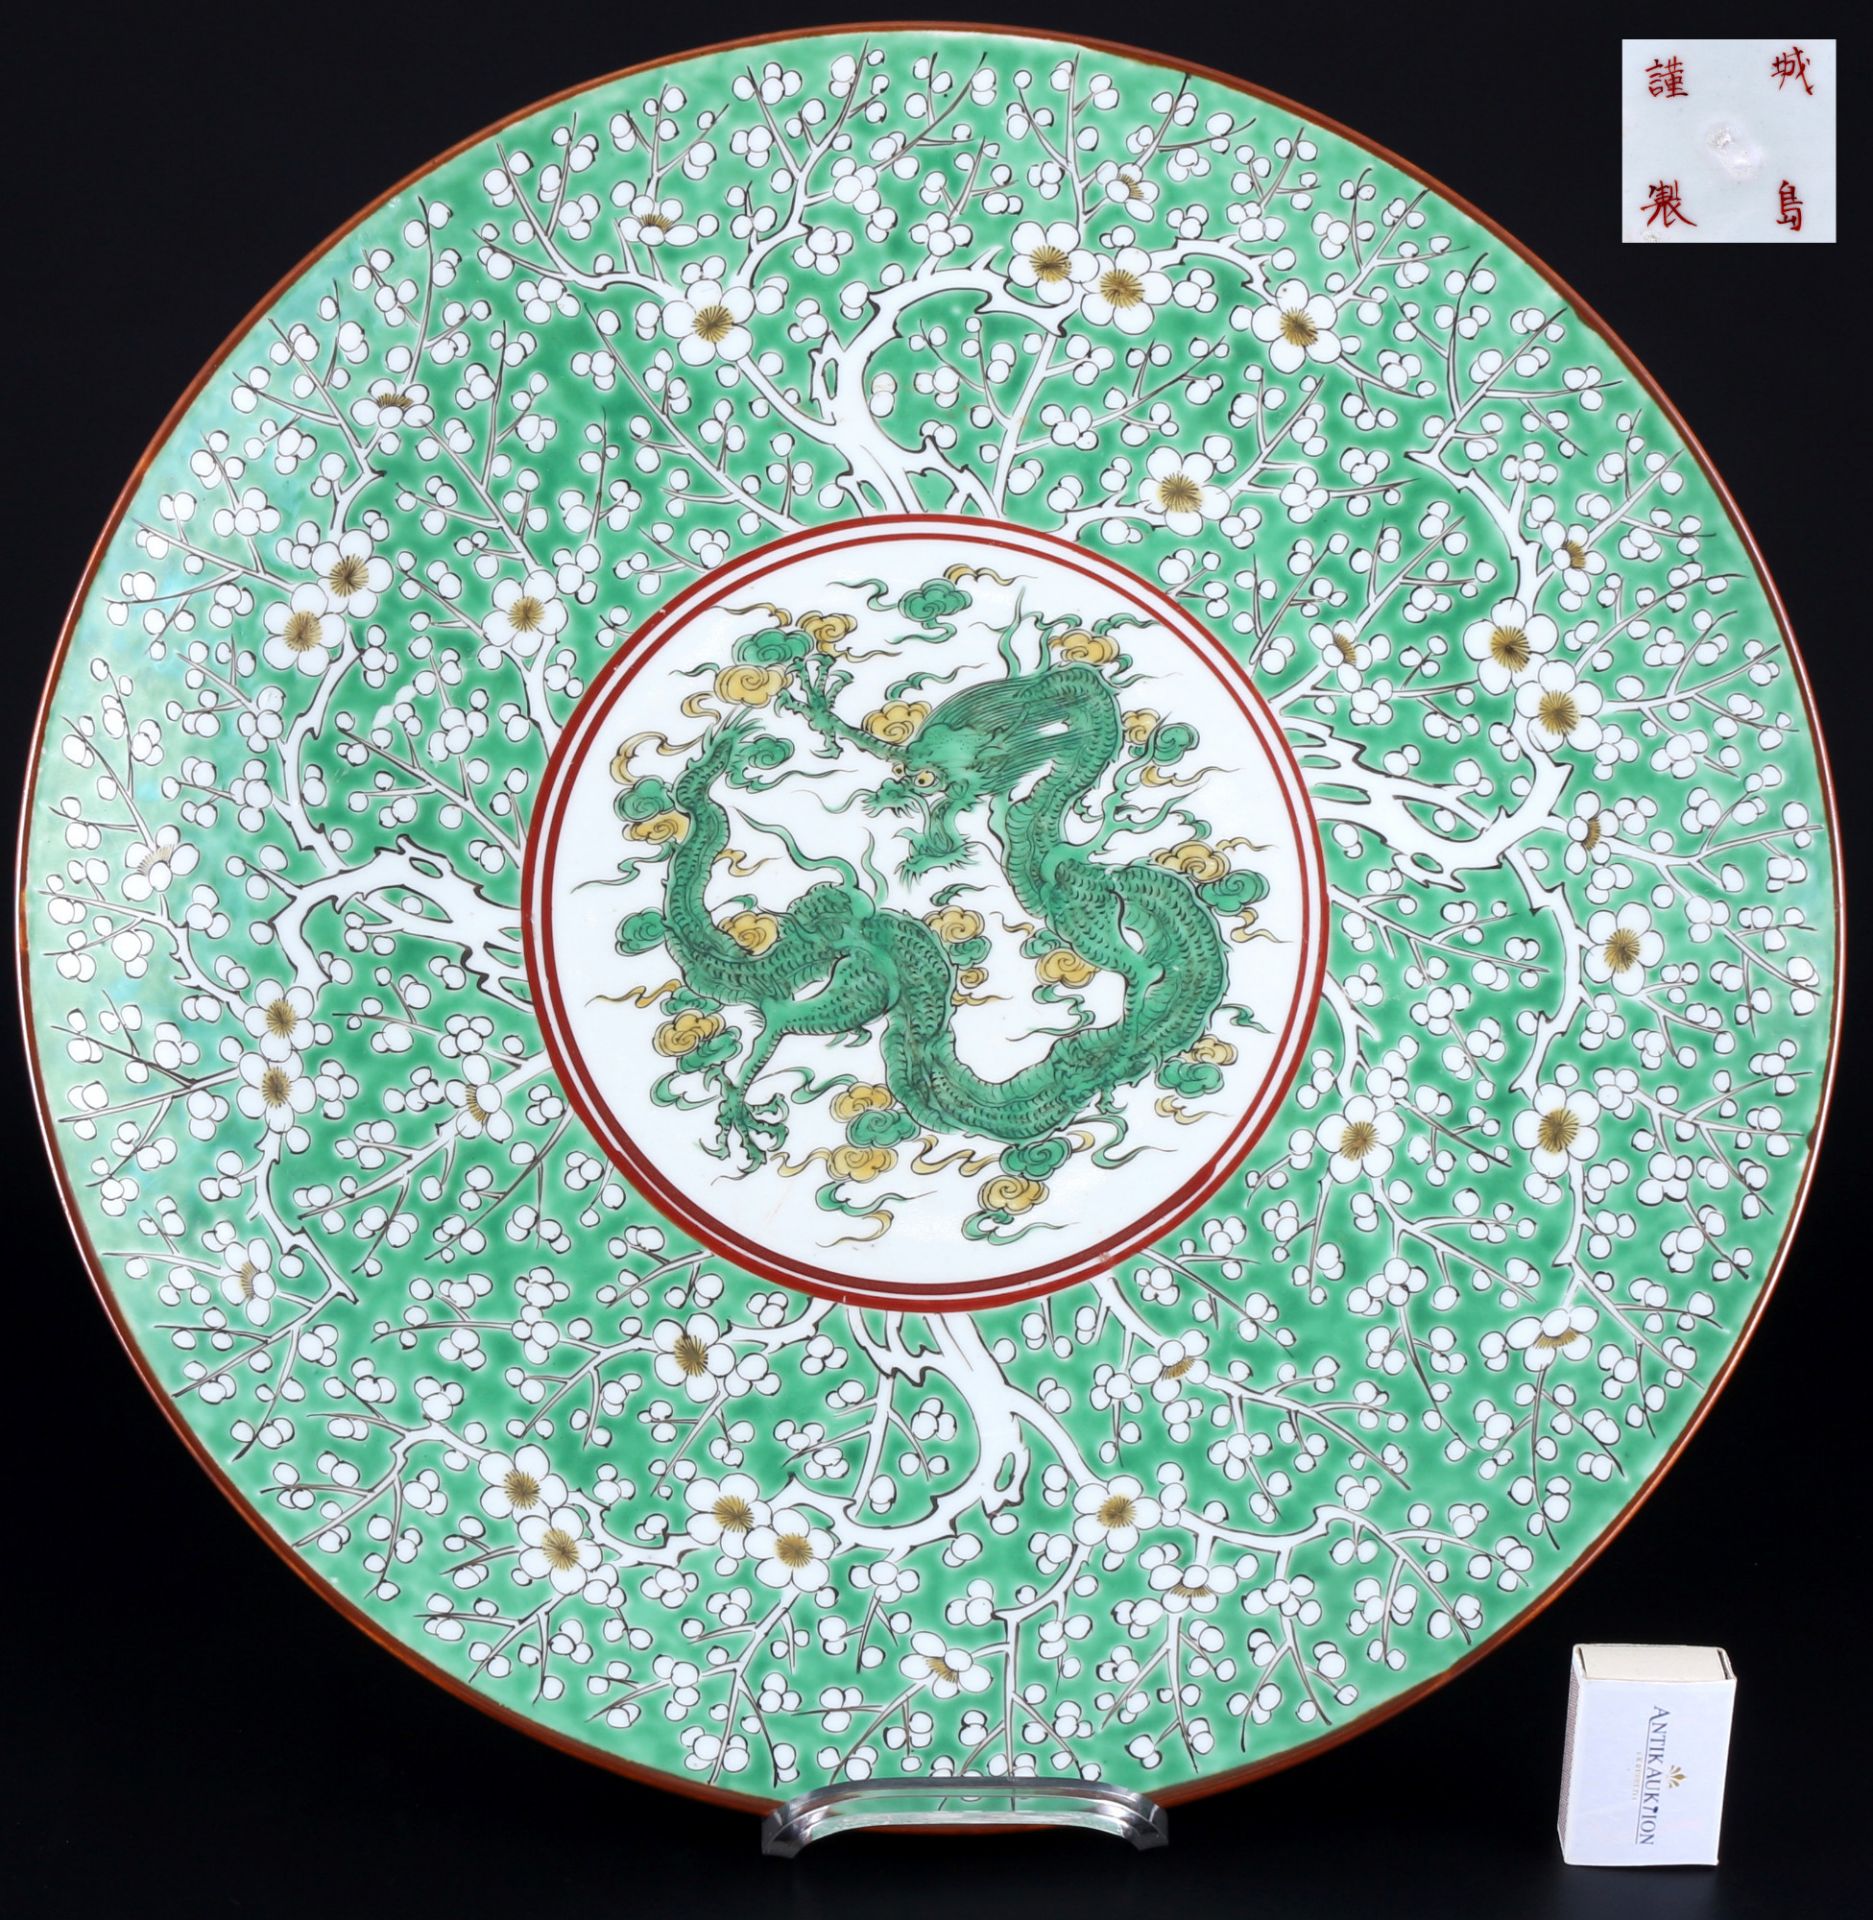 Japan riesige Drachen Platte / Schale Meiji-Periode D 46,5 cm, large dragon plate / bowl,